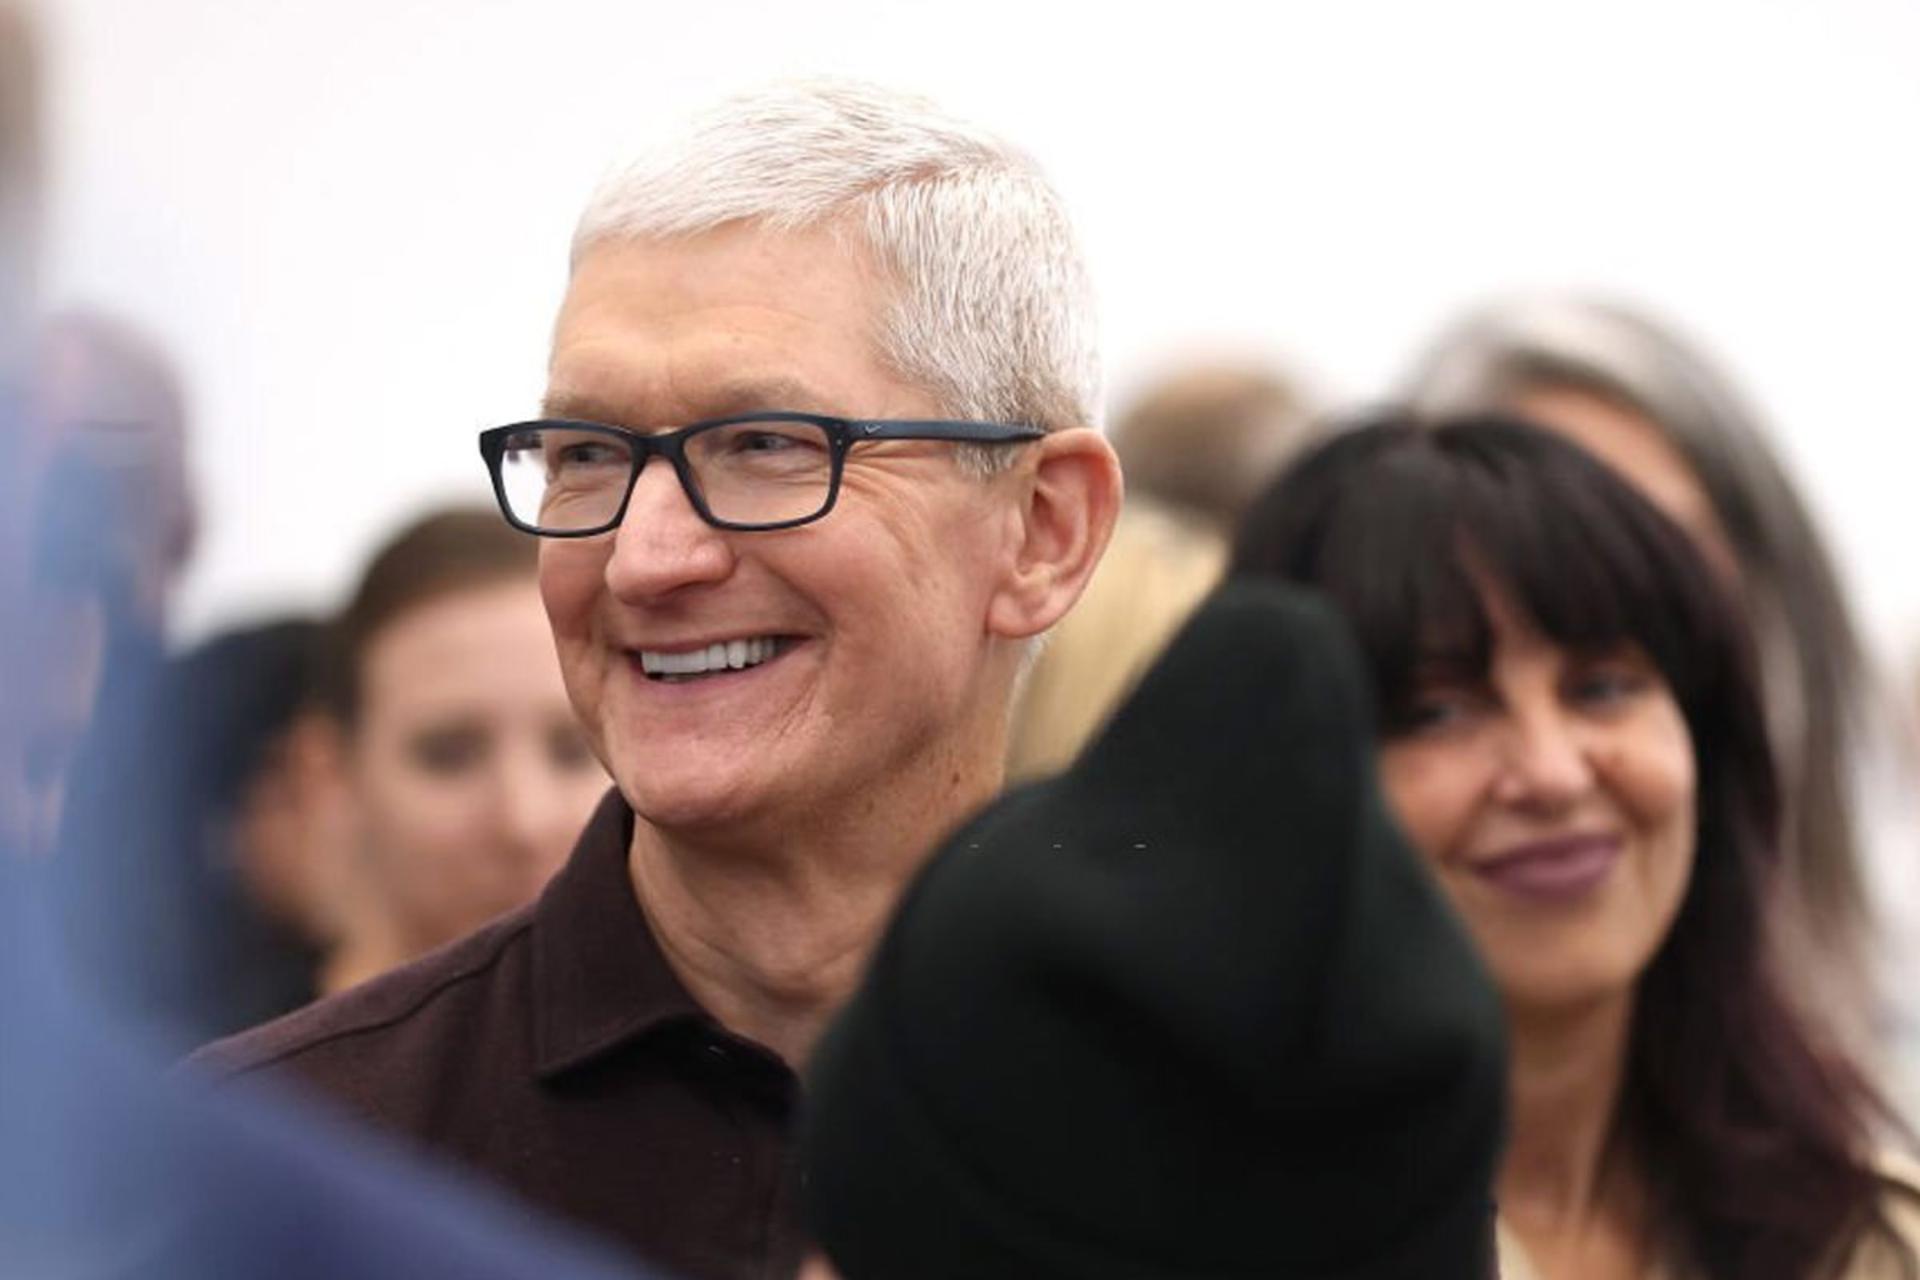 مرجع متخصصين ايران لبخند تيم كوك Tim Cook مديرعامل اپل Apple در مراسم Far Out آيفون ۱۴